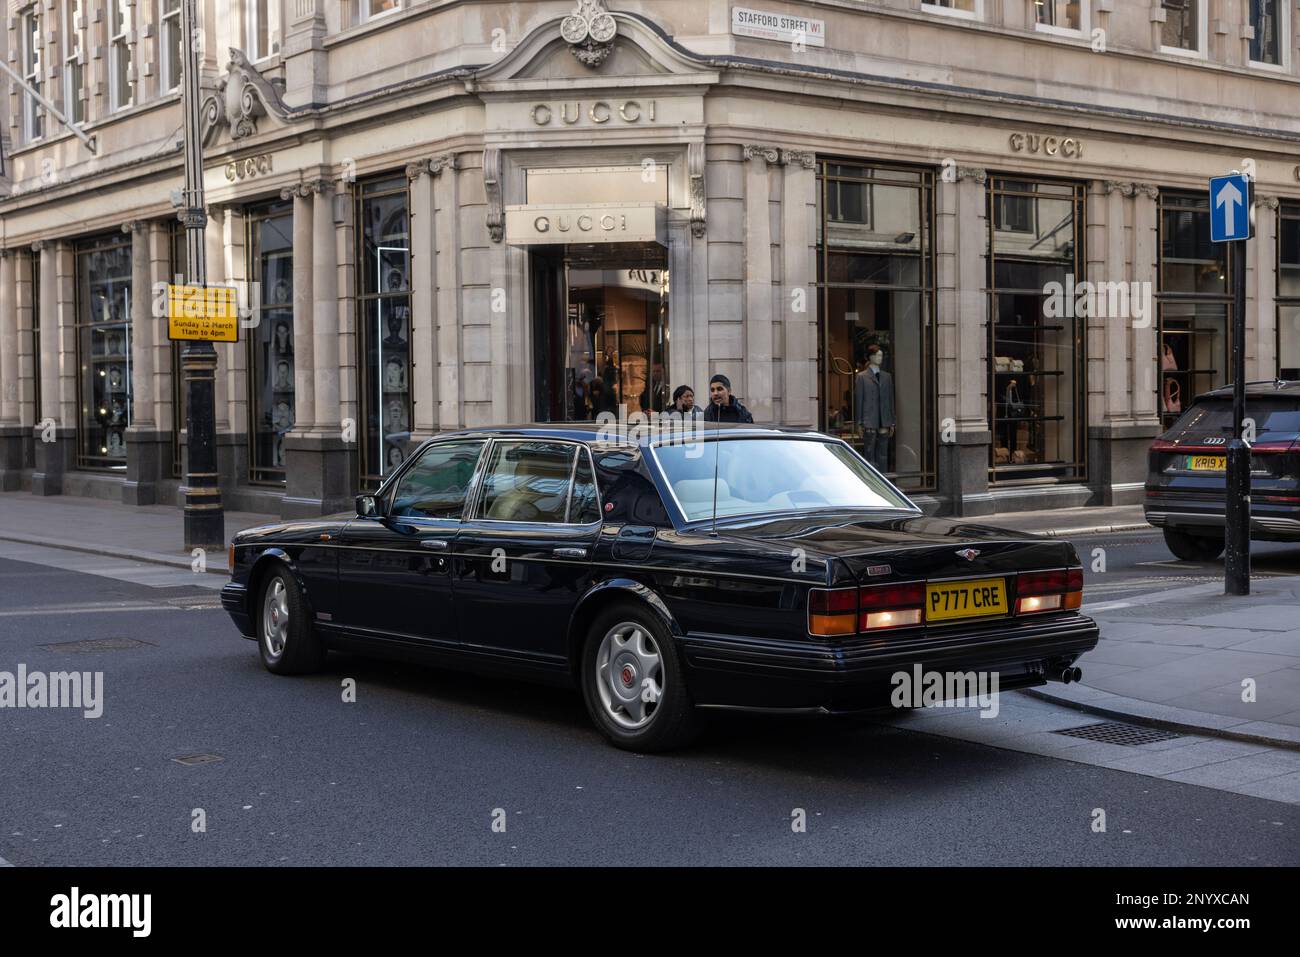 L'auto di lusso Bentley passa davanti alla boutique di moda Gucci su Old Bond Street, Londra, Inghilterra, Regno Unito Foto Stock